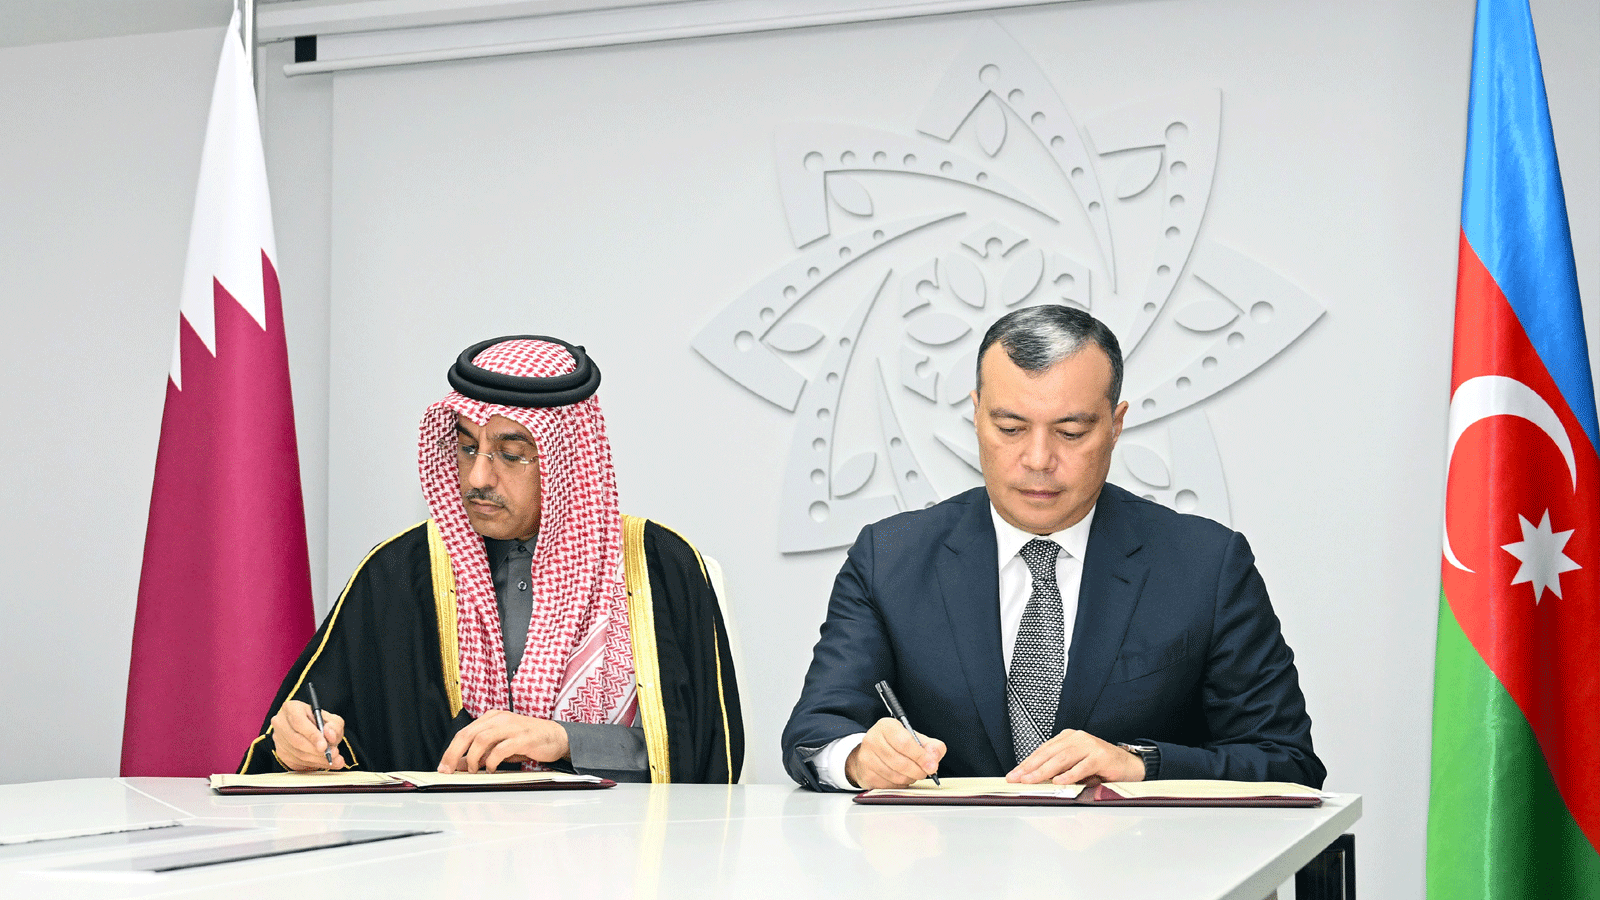 وزيرا العمل الأذربيجاني والقطري يوقعان مذكرة تفاهم لتعزيز التعاون في مجالات العمل(وكالة الأنباء القطرية)